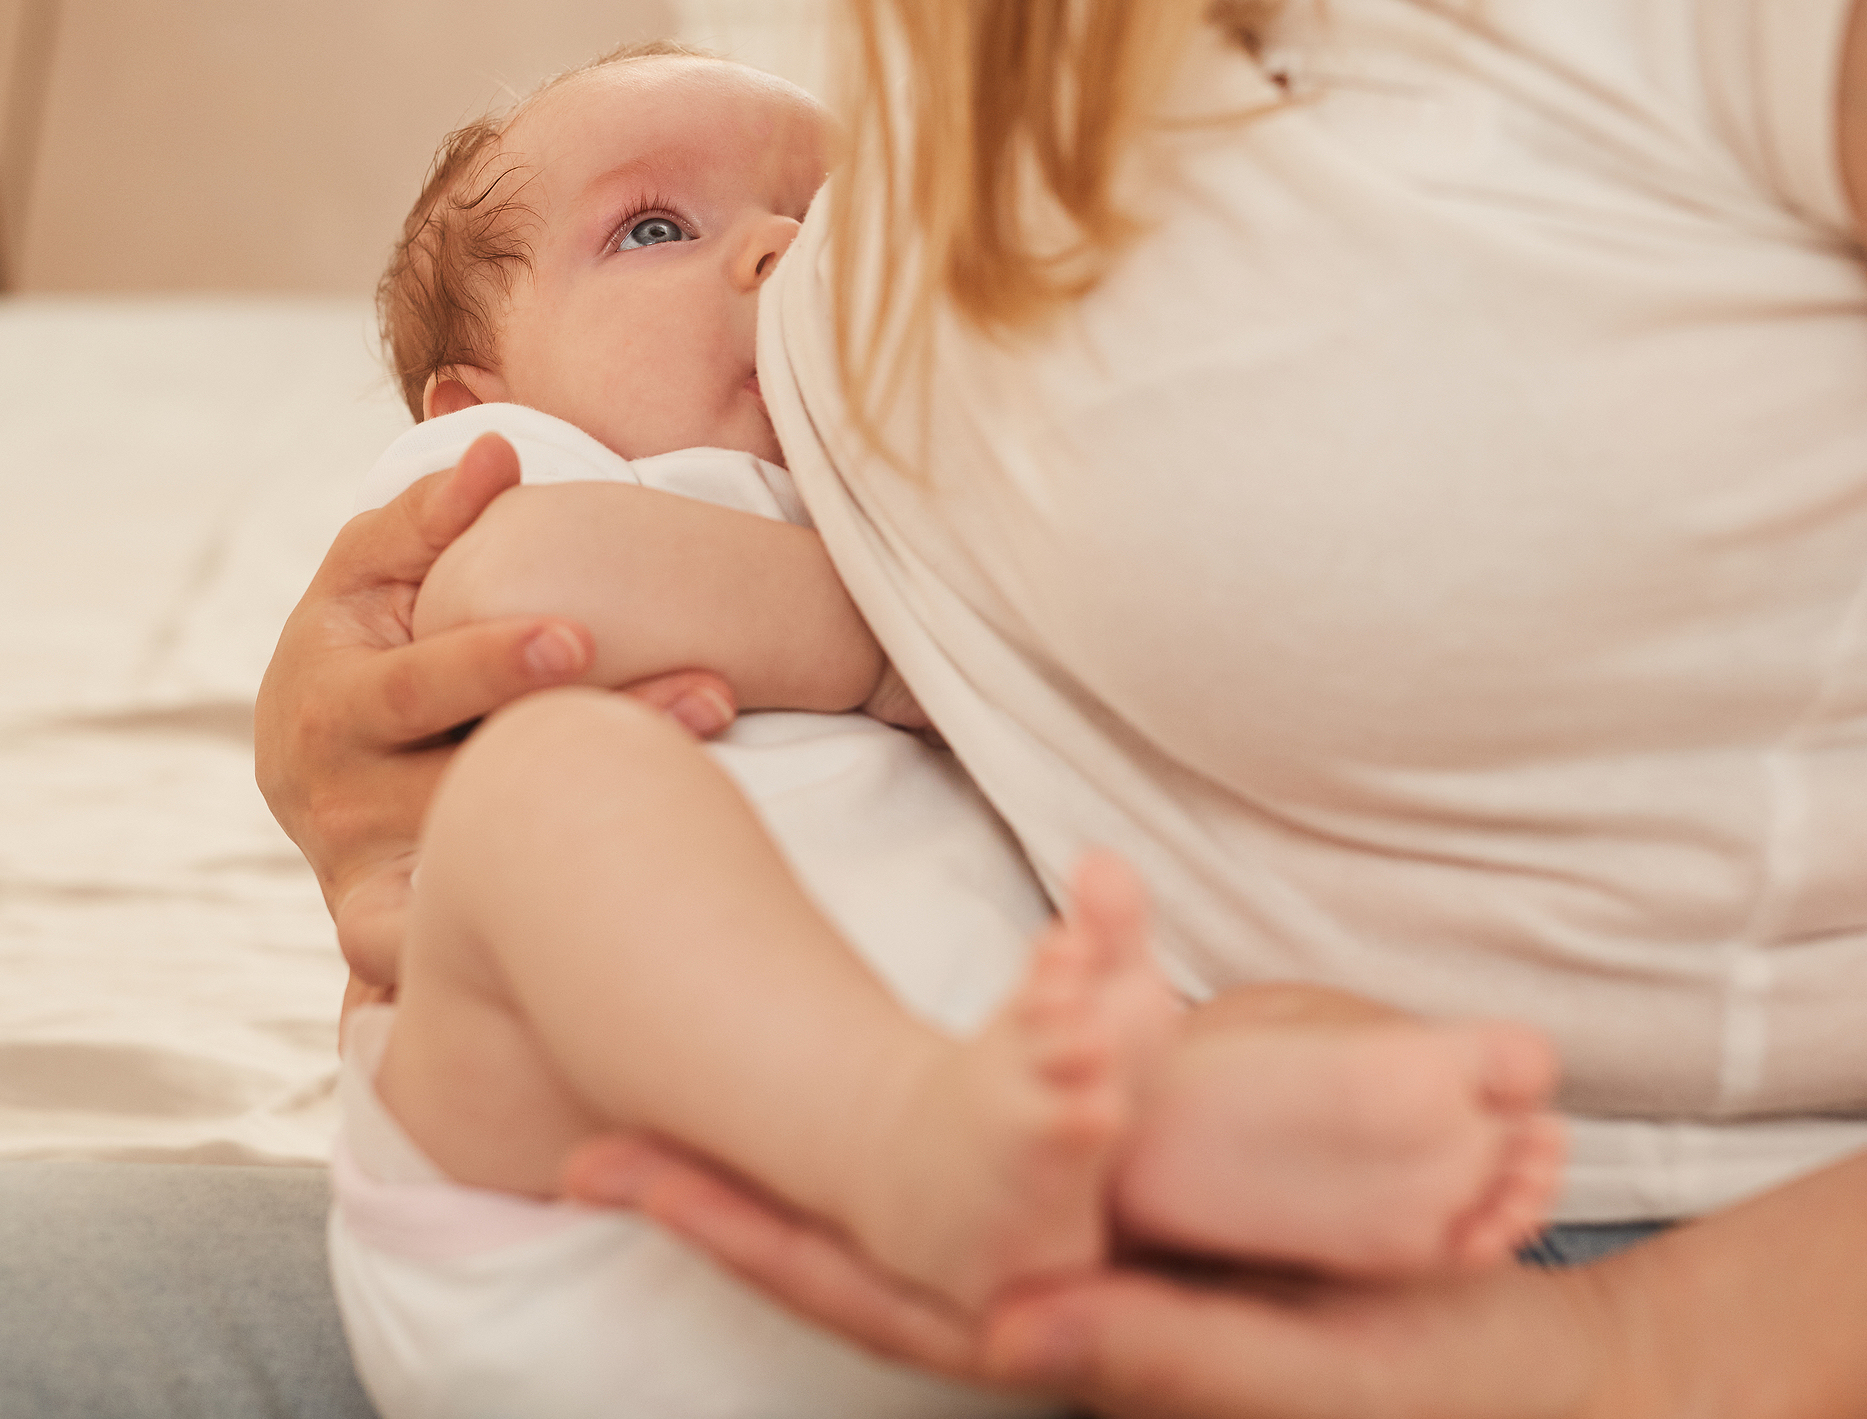 La lactancia materna previene la diabetes en las madres